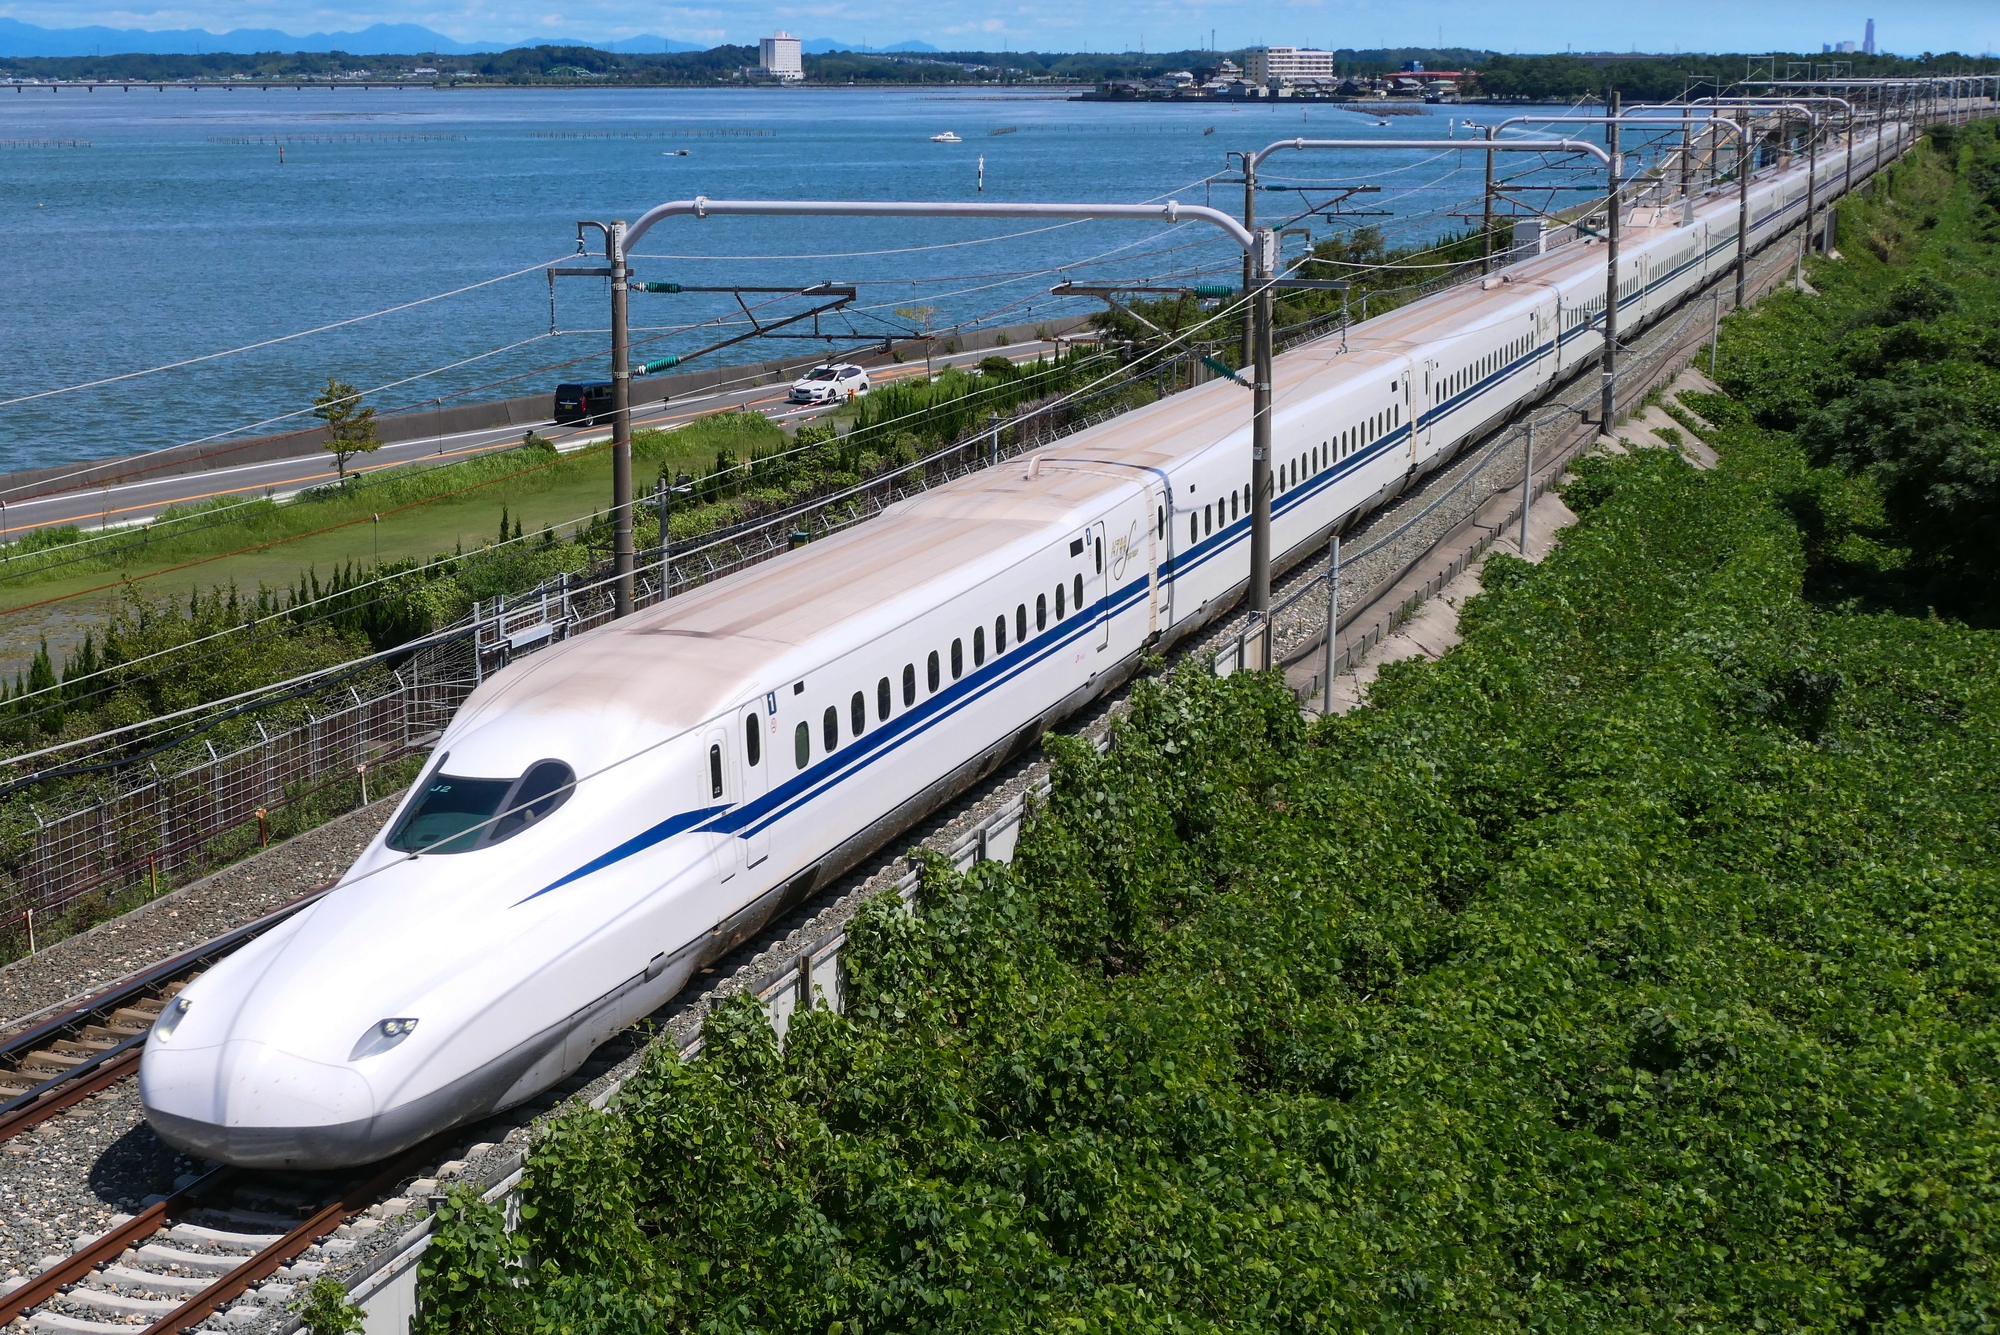 Tàu cao tốc Trung Quốc, Nhật Bản chạy gần 350 km/h: Tương lai đường sắt tốc độ cao của Việt Nam chạy 250km/h? - Ảnh 4.